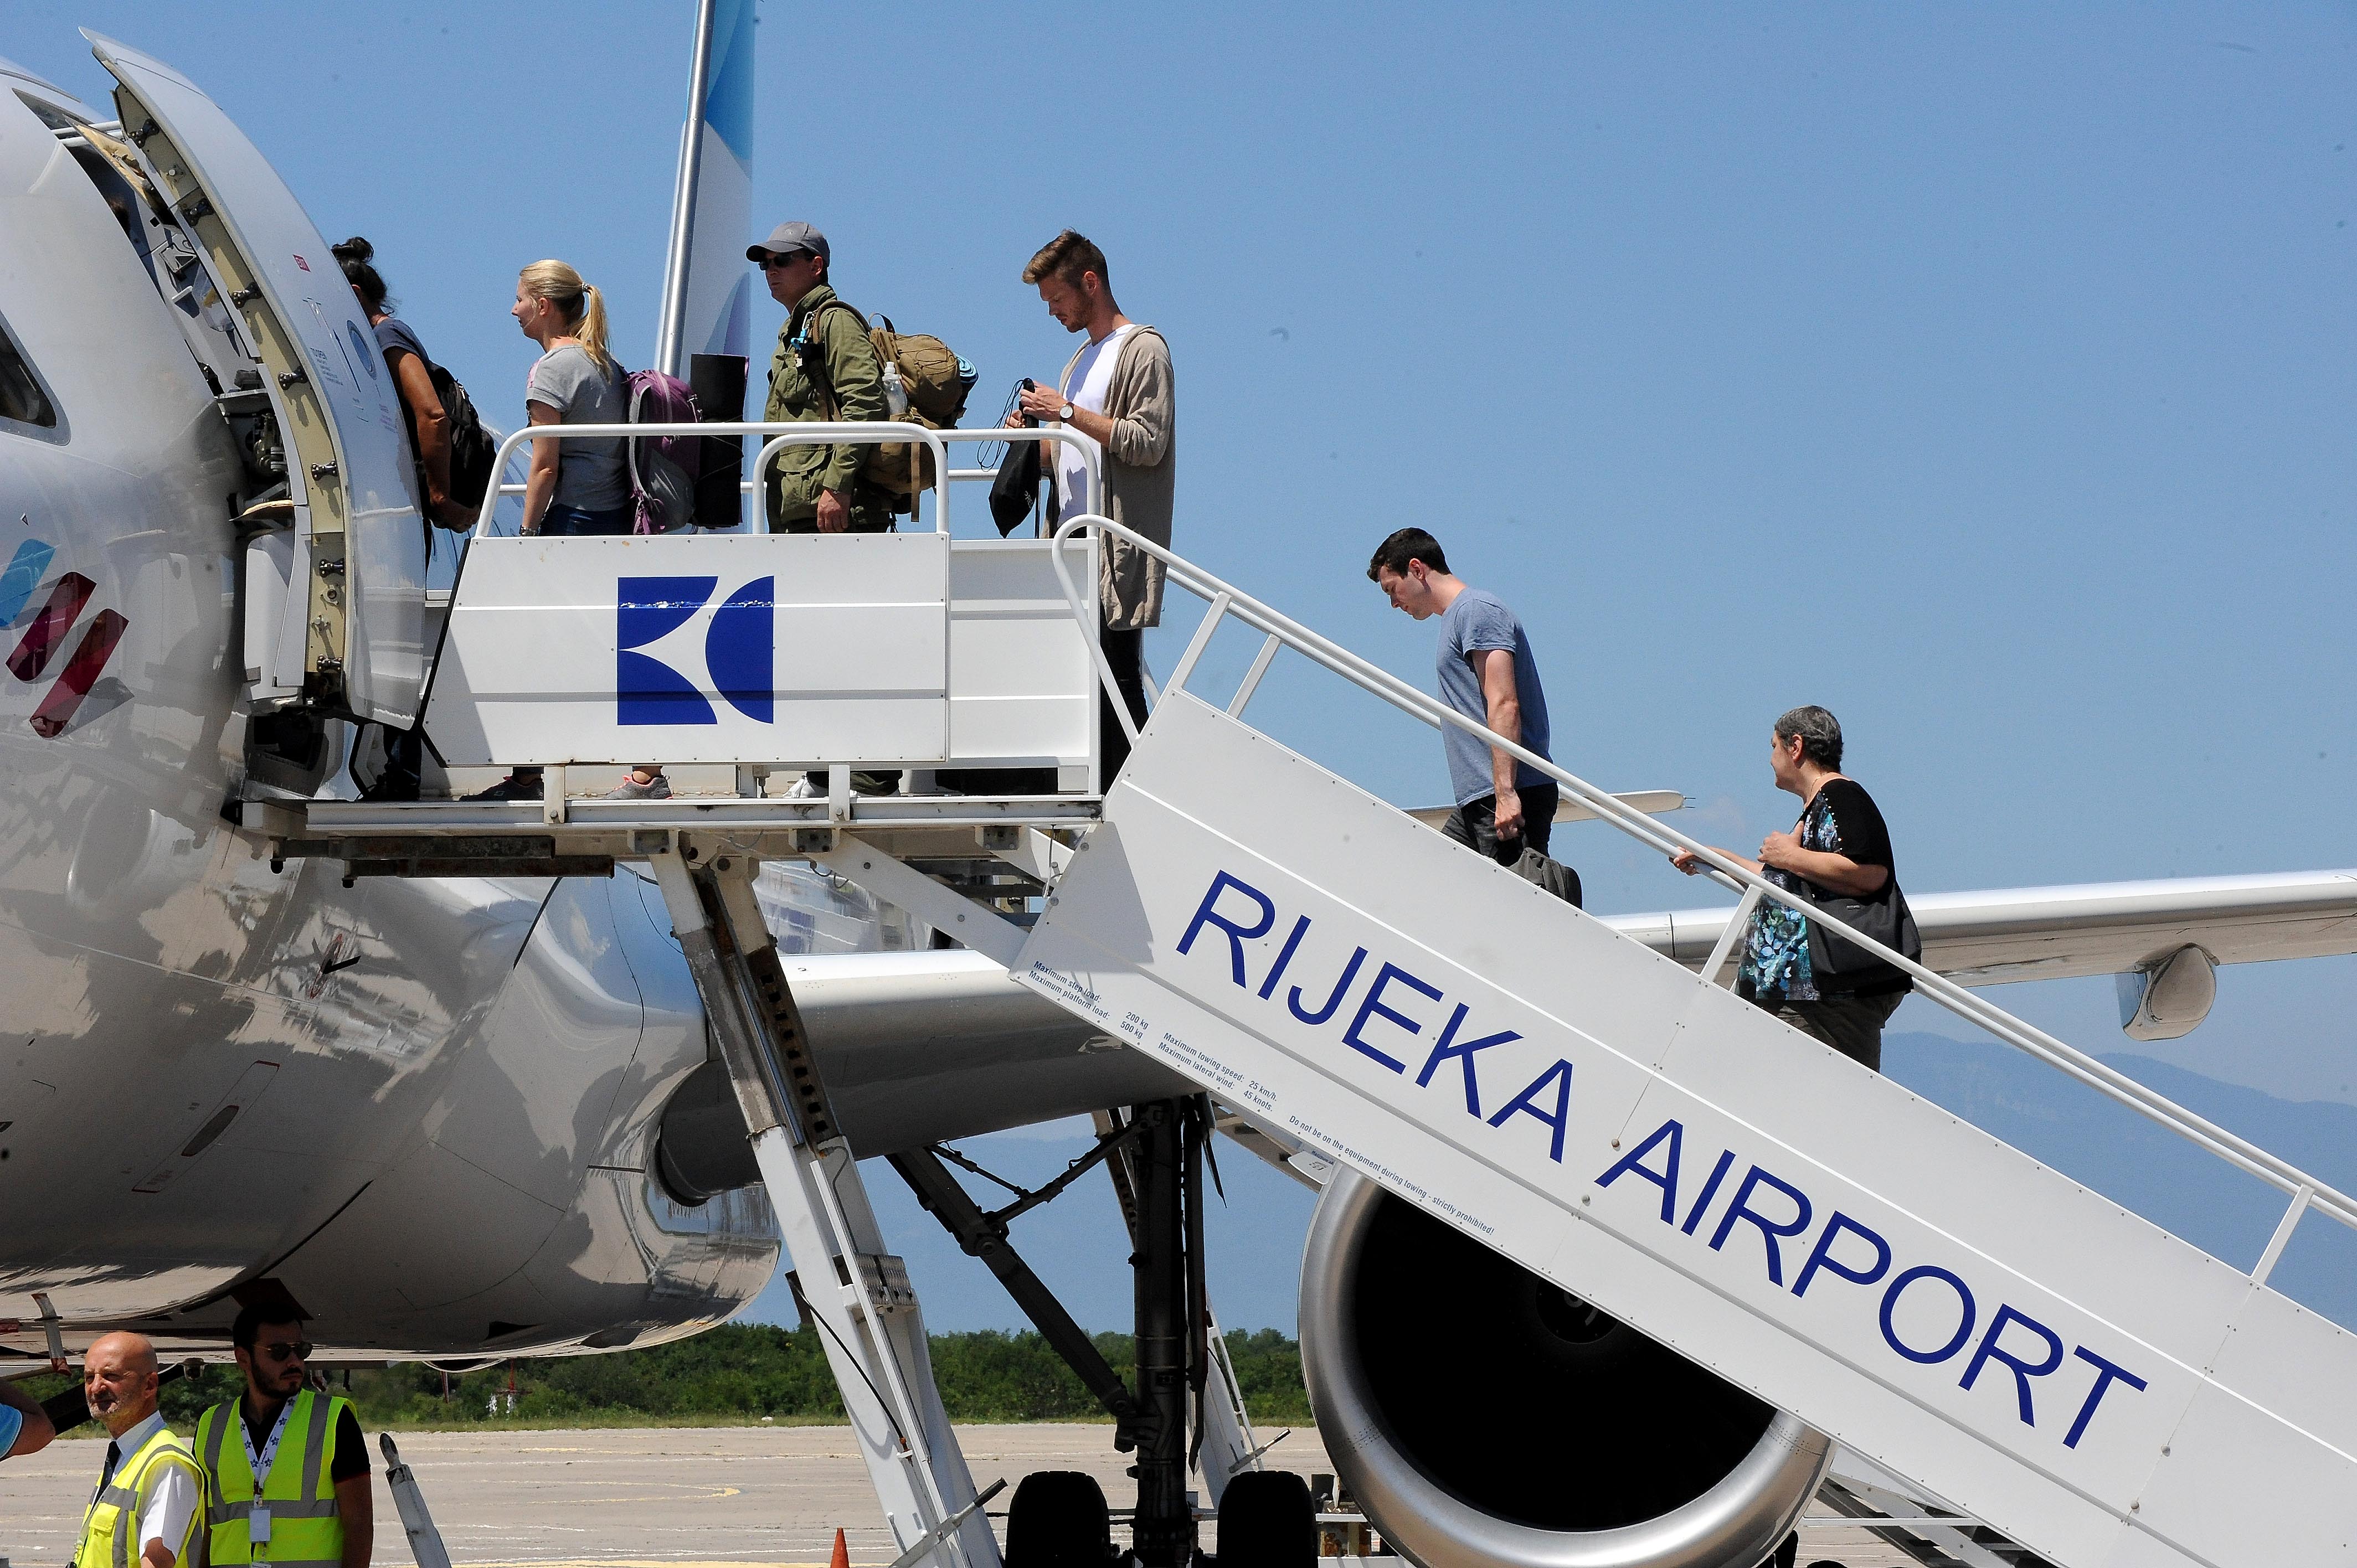 Zračna luka Rijeka u ovoj je godini zabilježila rast broja putnika od pet posto